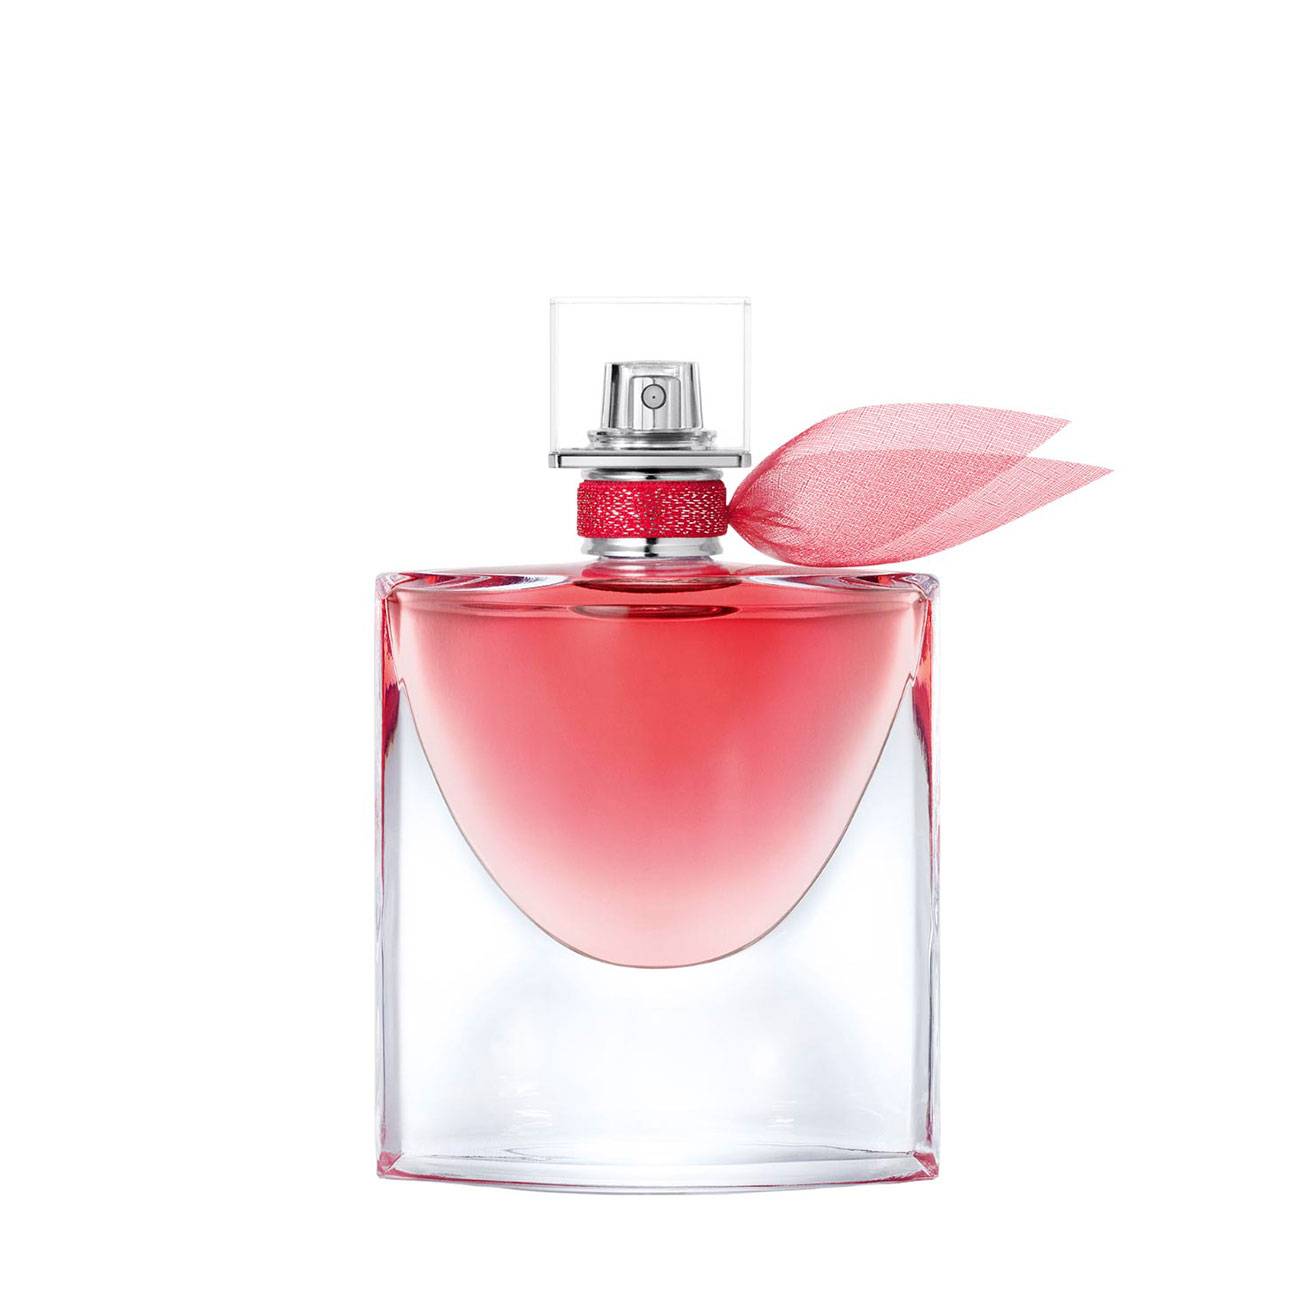 Apa de Parfum Lancôme LA VIE EST BELLE INTENSEMENT 50ml cu comanda online